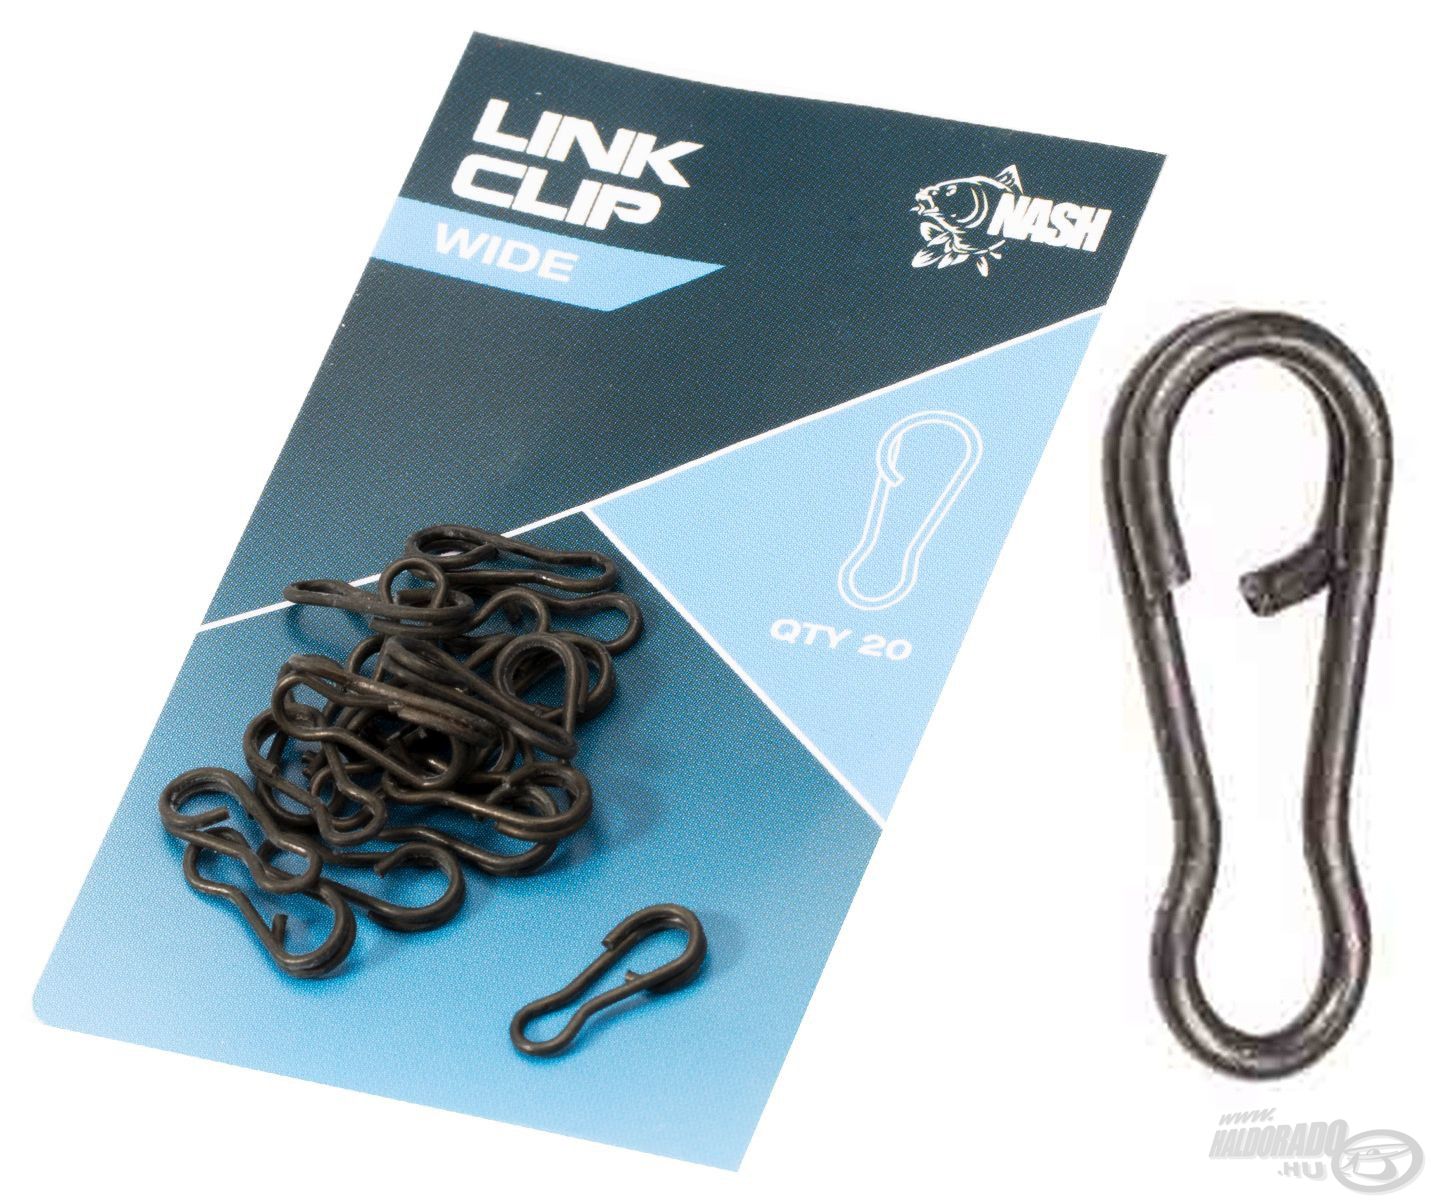 A Link Clip különleges bevonatának köszönhetően csekély a víz alatti csillogása, ezáltal hozzájárul a szerelék rejtettségéhez. Elérhető wide és slim modellekben